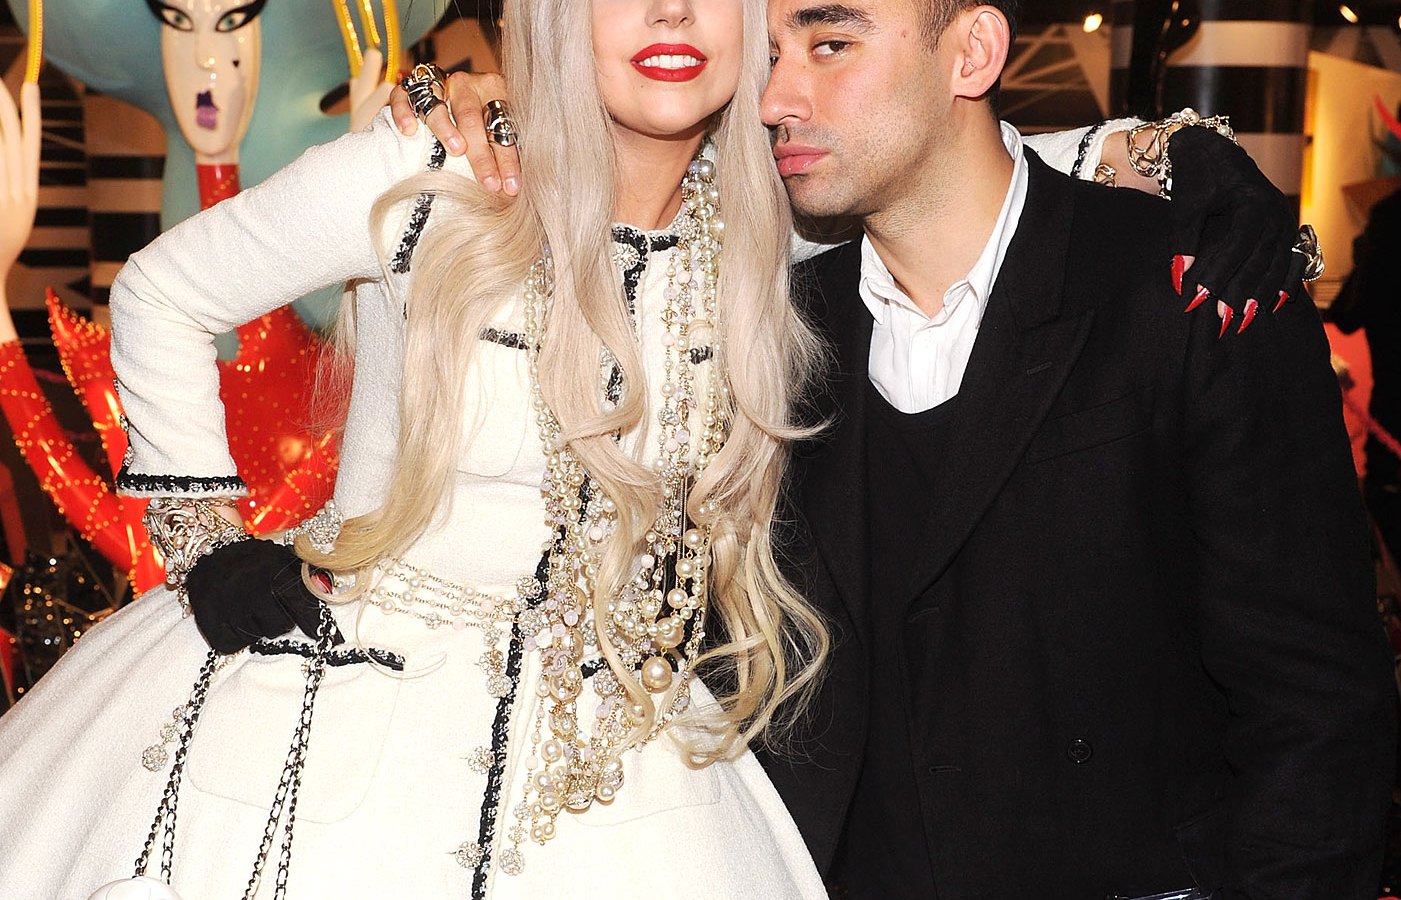 Lady Gaga and former stylist Nicola Formichetti on November 21, 2011